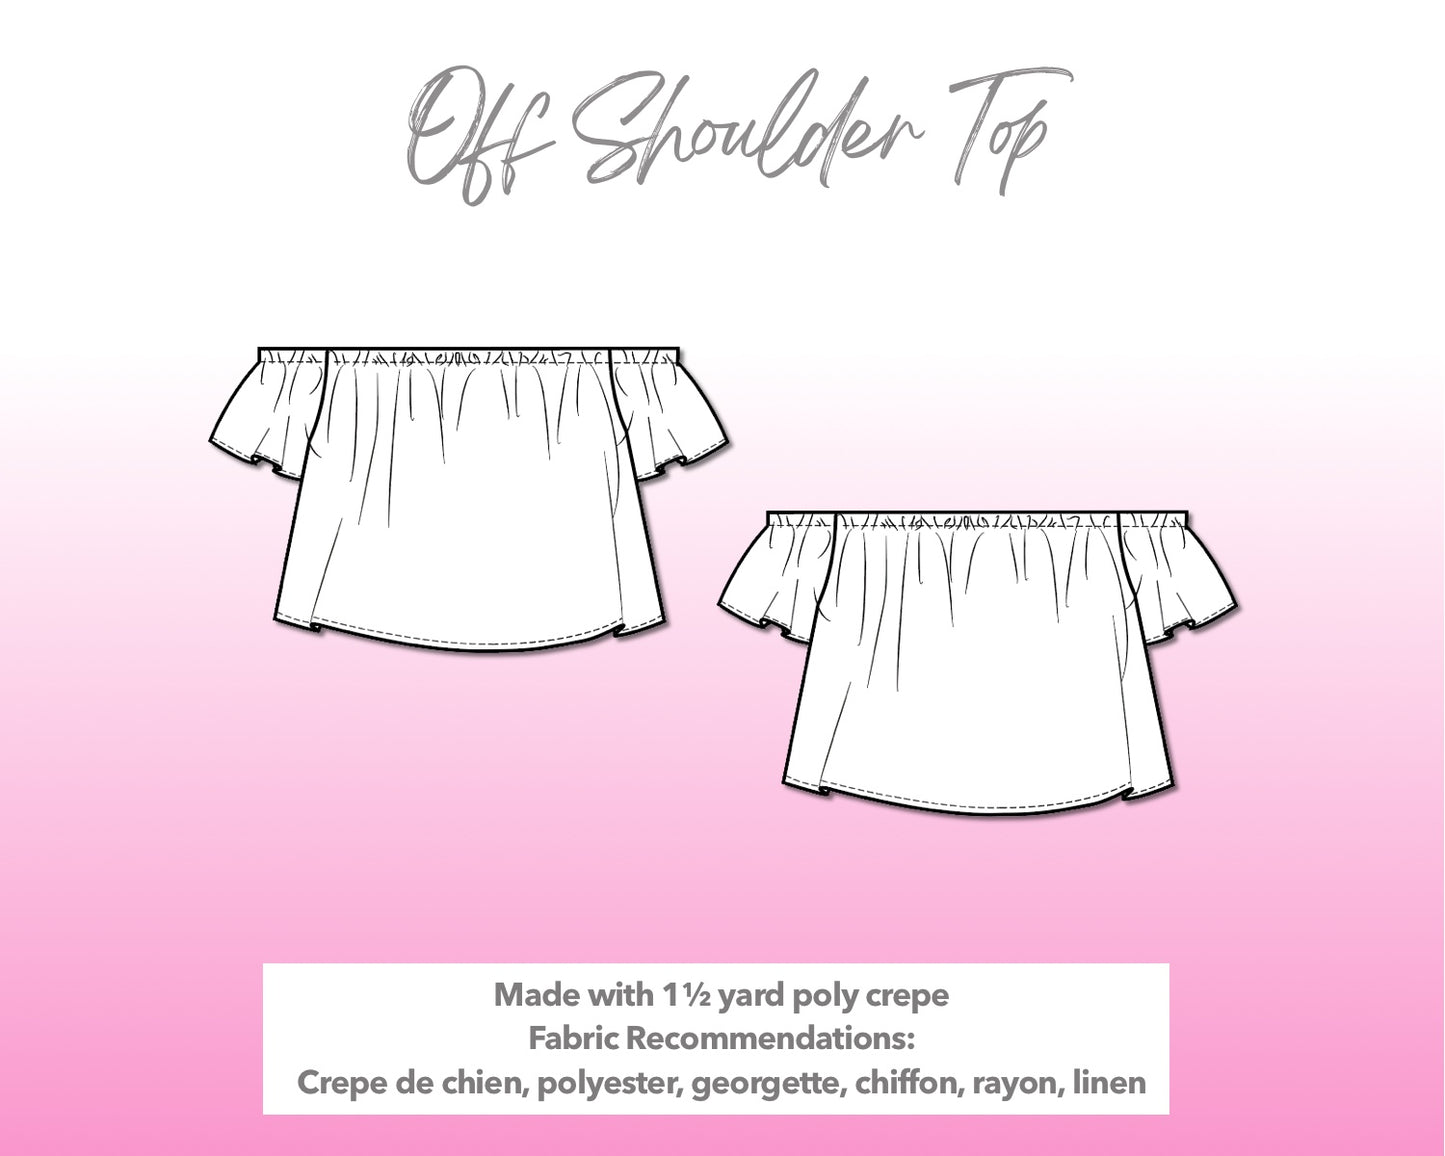 Illustration and detailed description for Off Shoulder Crop Top sewing pattern.